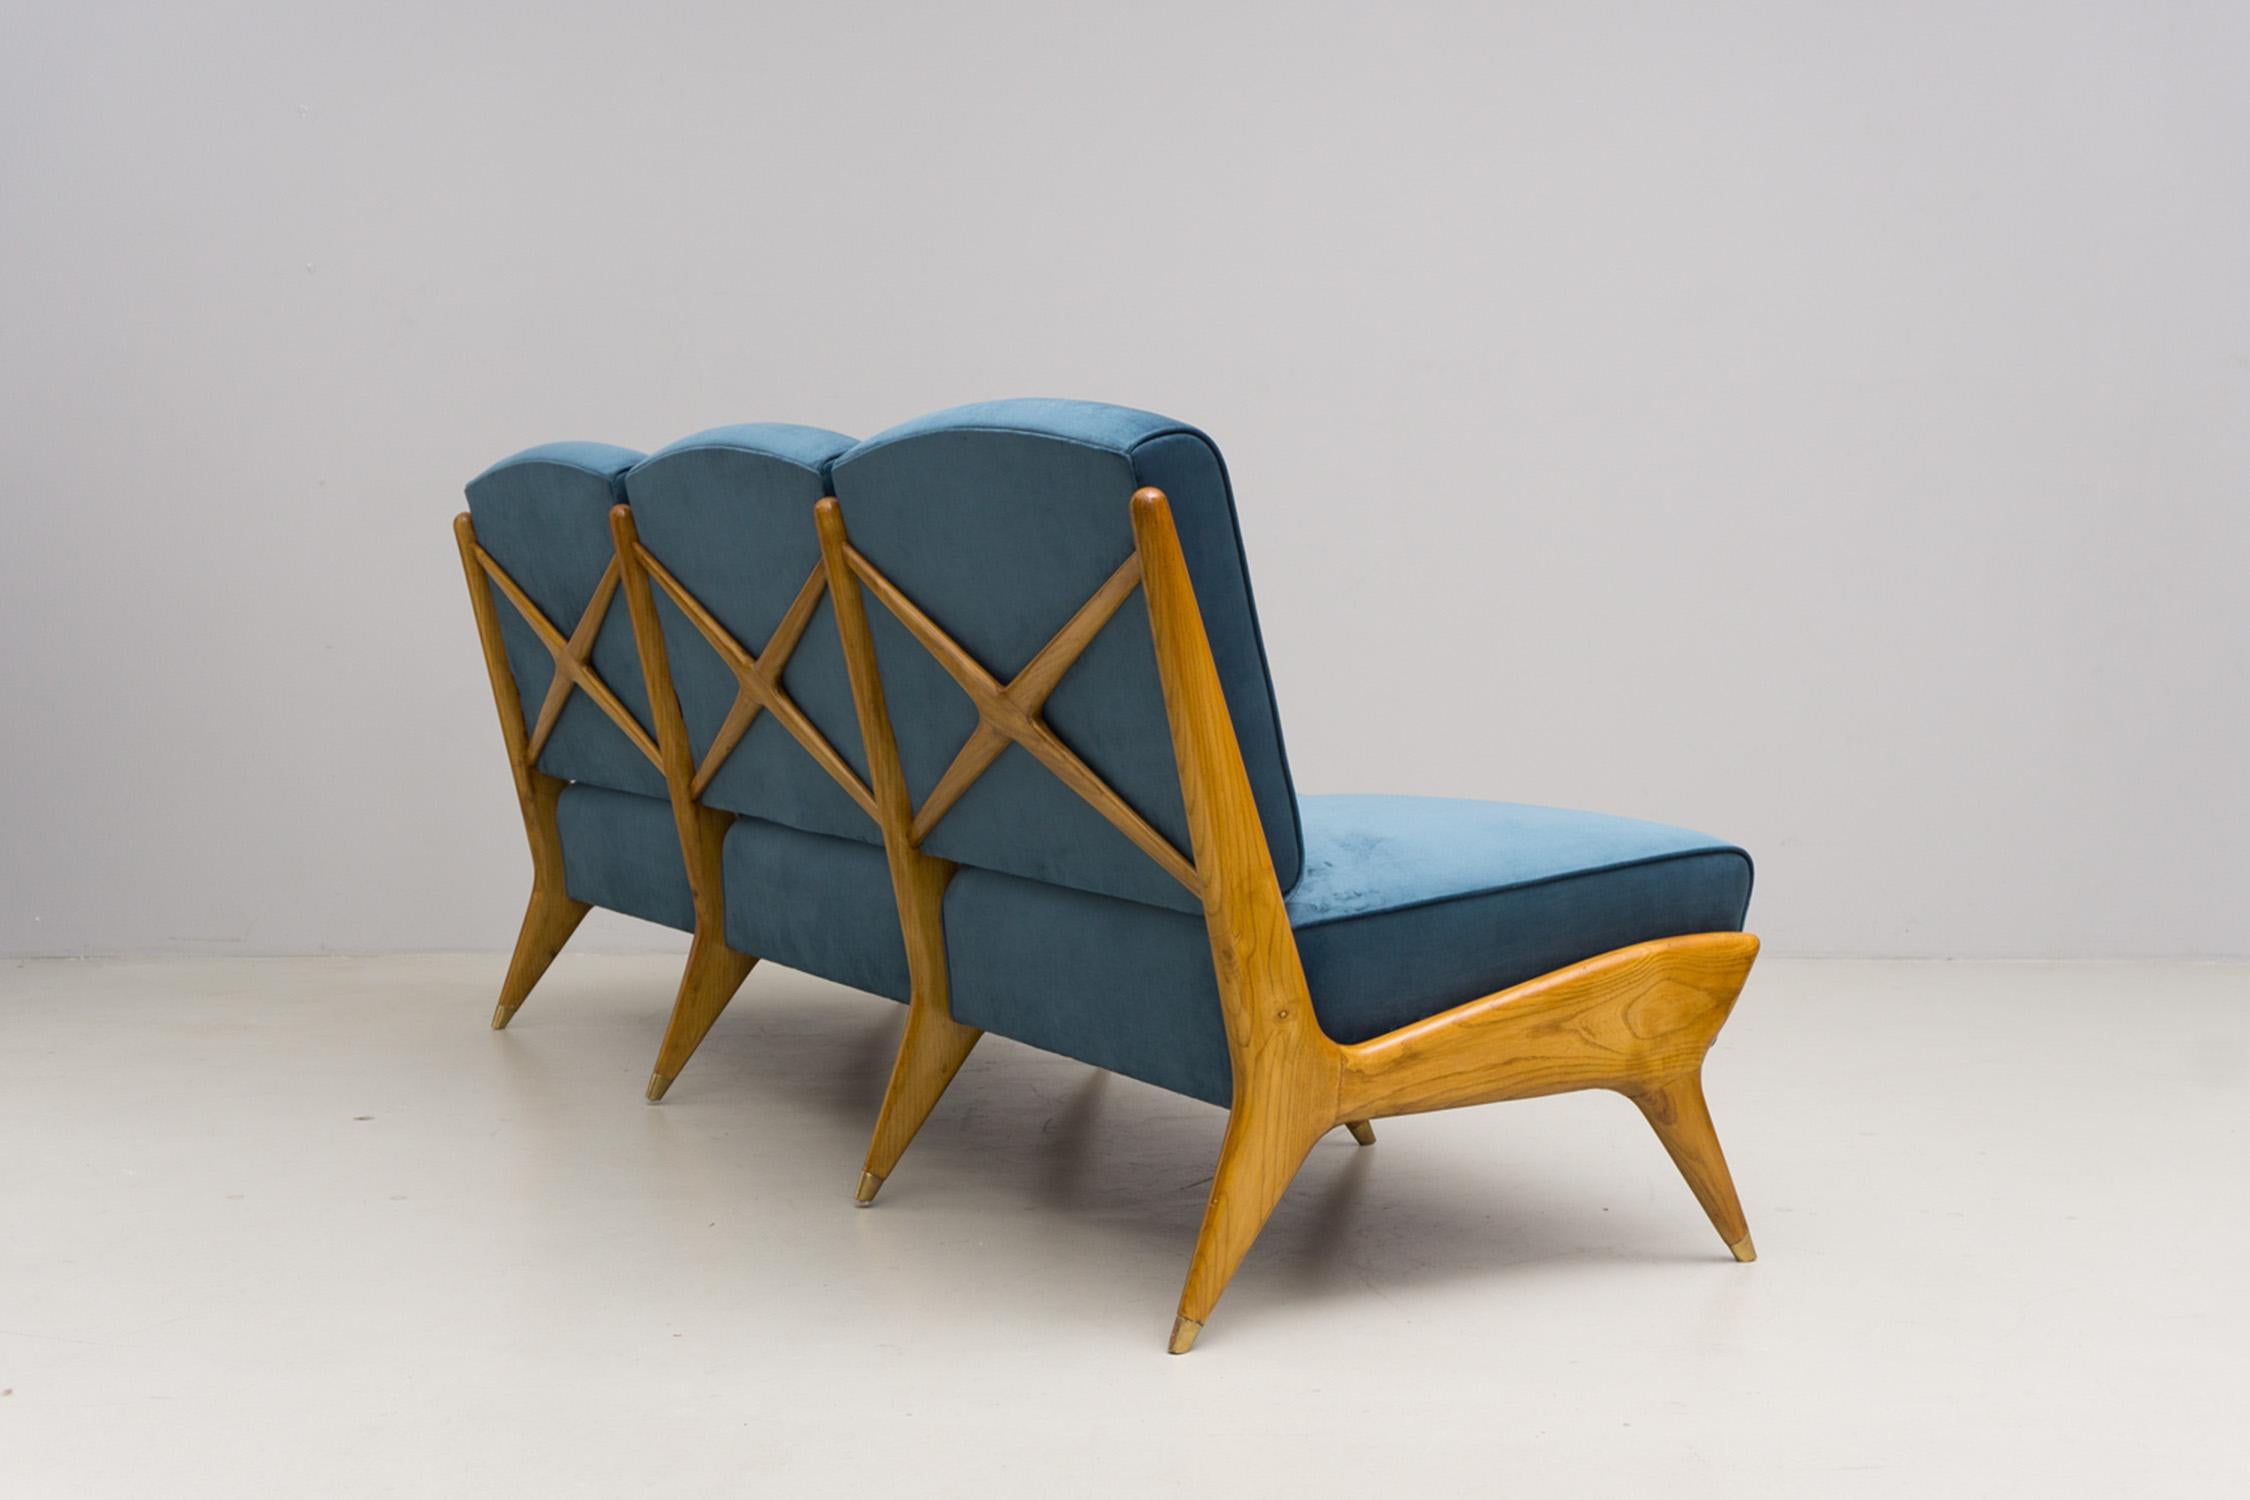 Die raffinierte und avantgardistische Designsprache von Ico Parisi wird in diesem schönen Dreisitzer verkörpert. Für den Eingang einer Villa in Como entwarf Ico Parisi diesen schönen Sessel. Er besteht aus schönem Eschenholz, Messing und einer